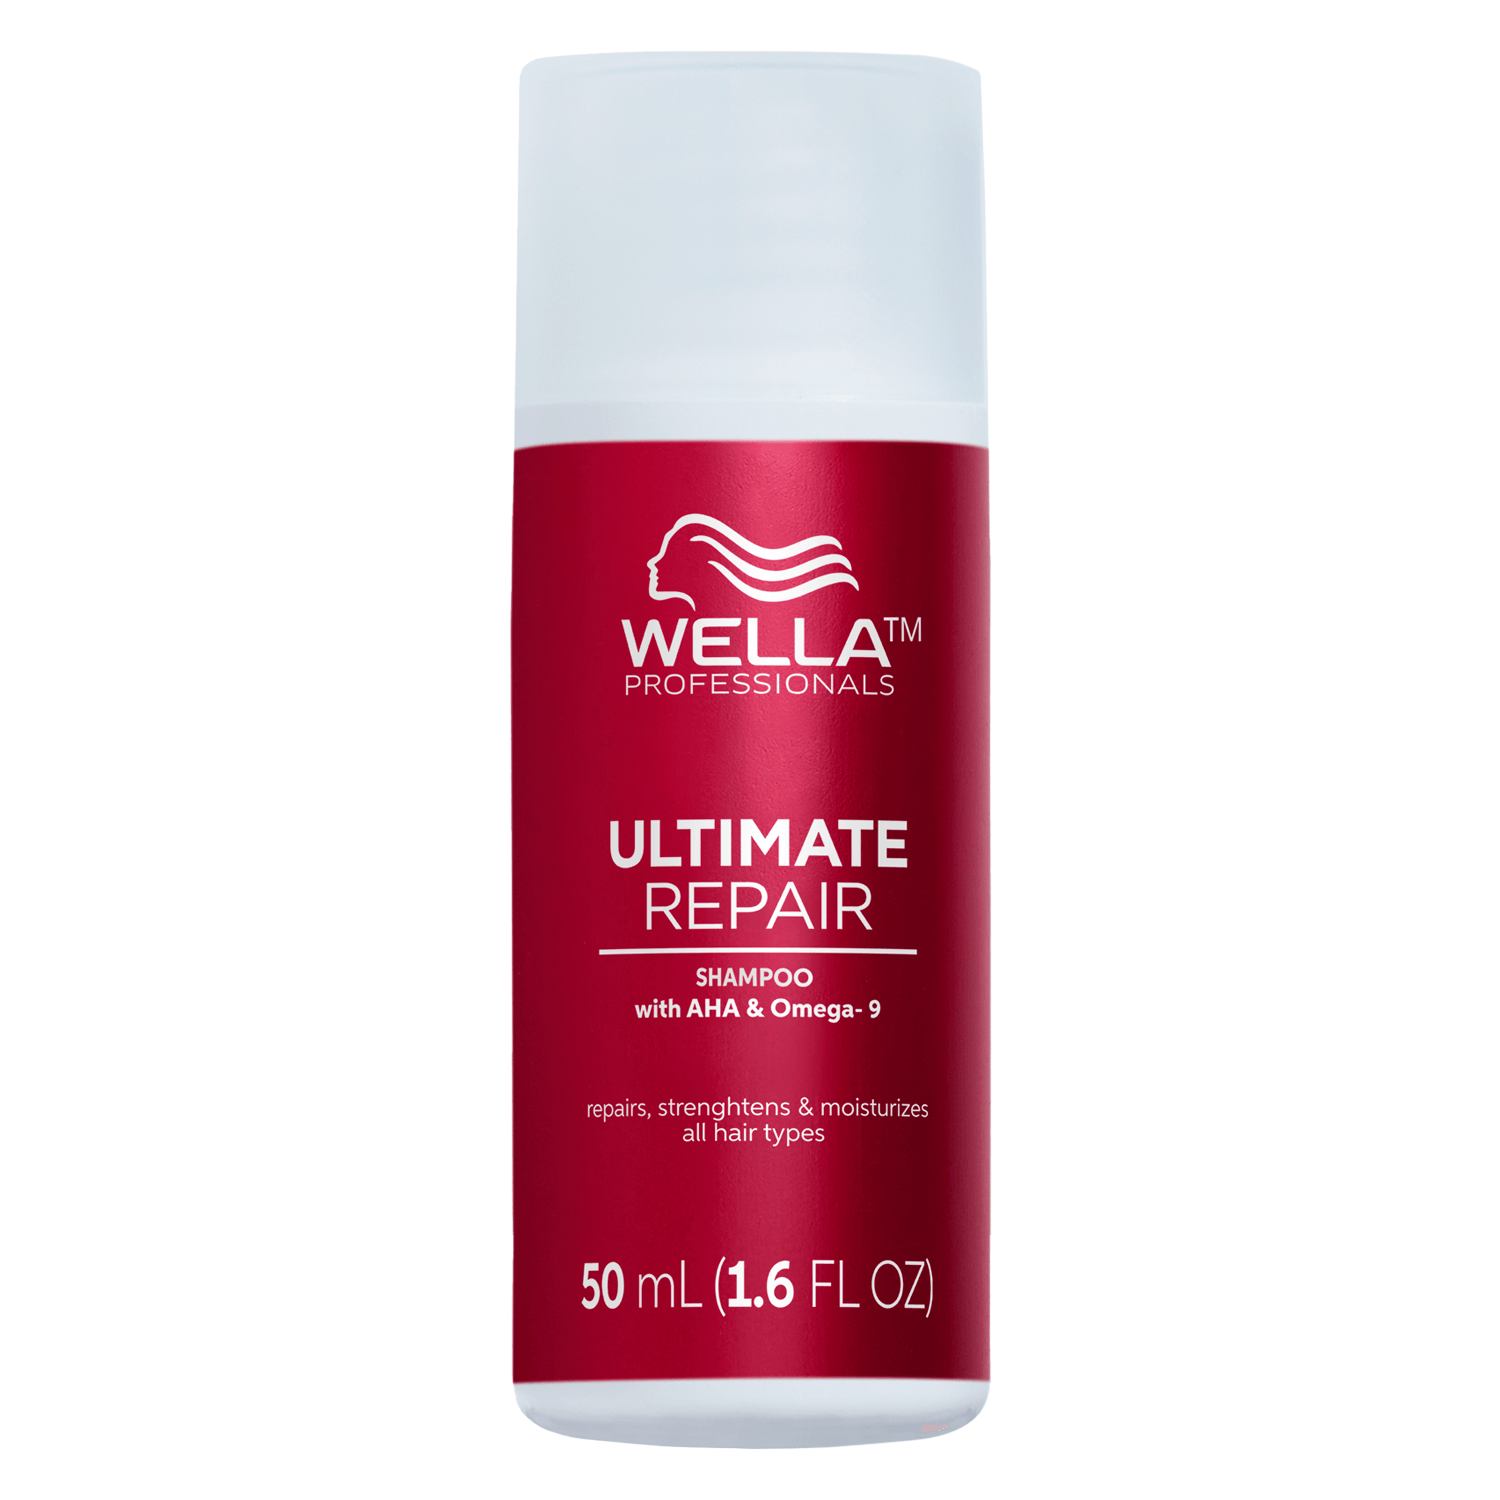 Produktbild von Ultimate Repair - Shampoo